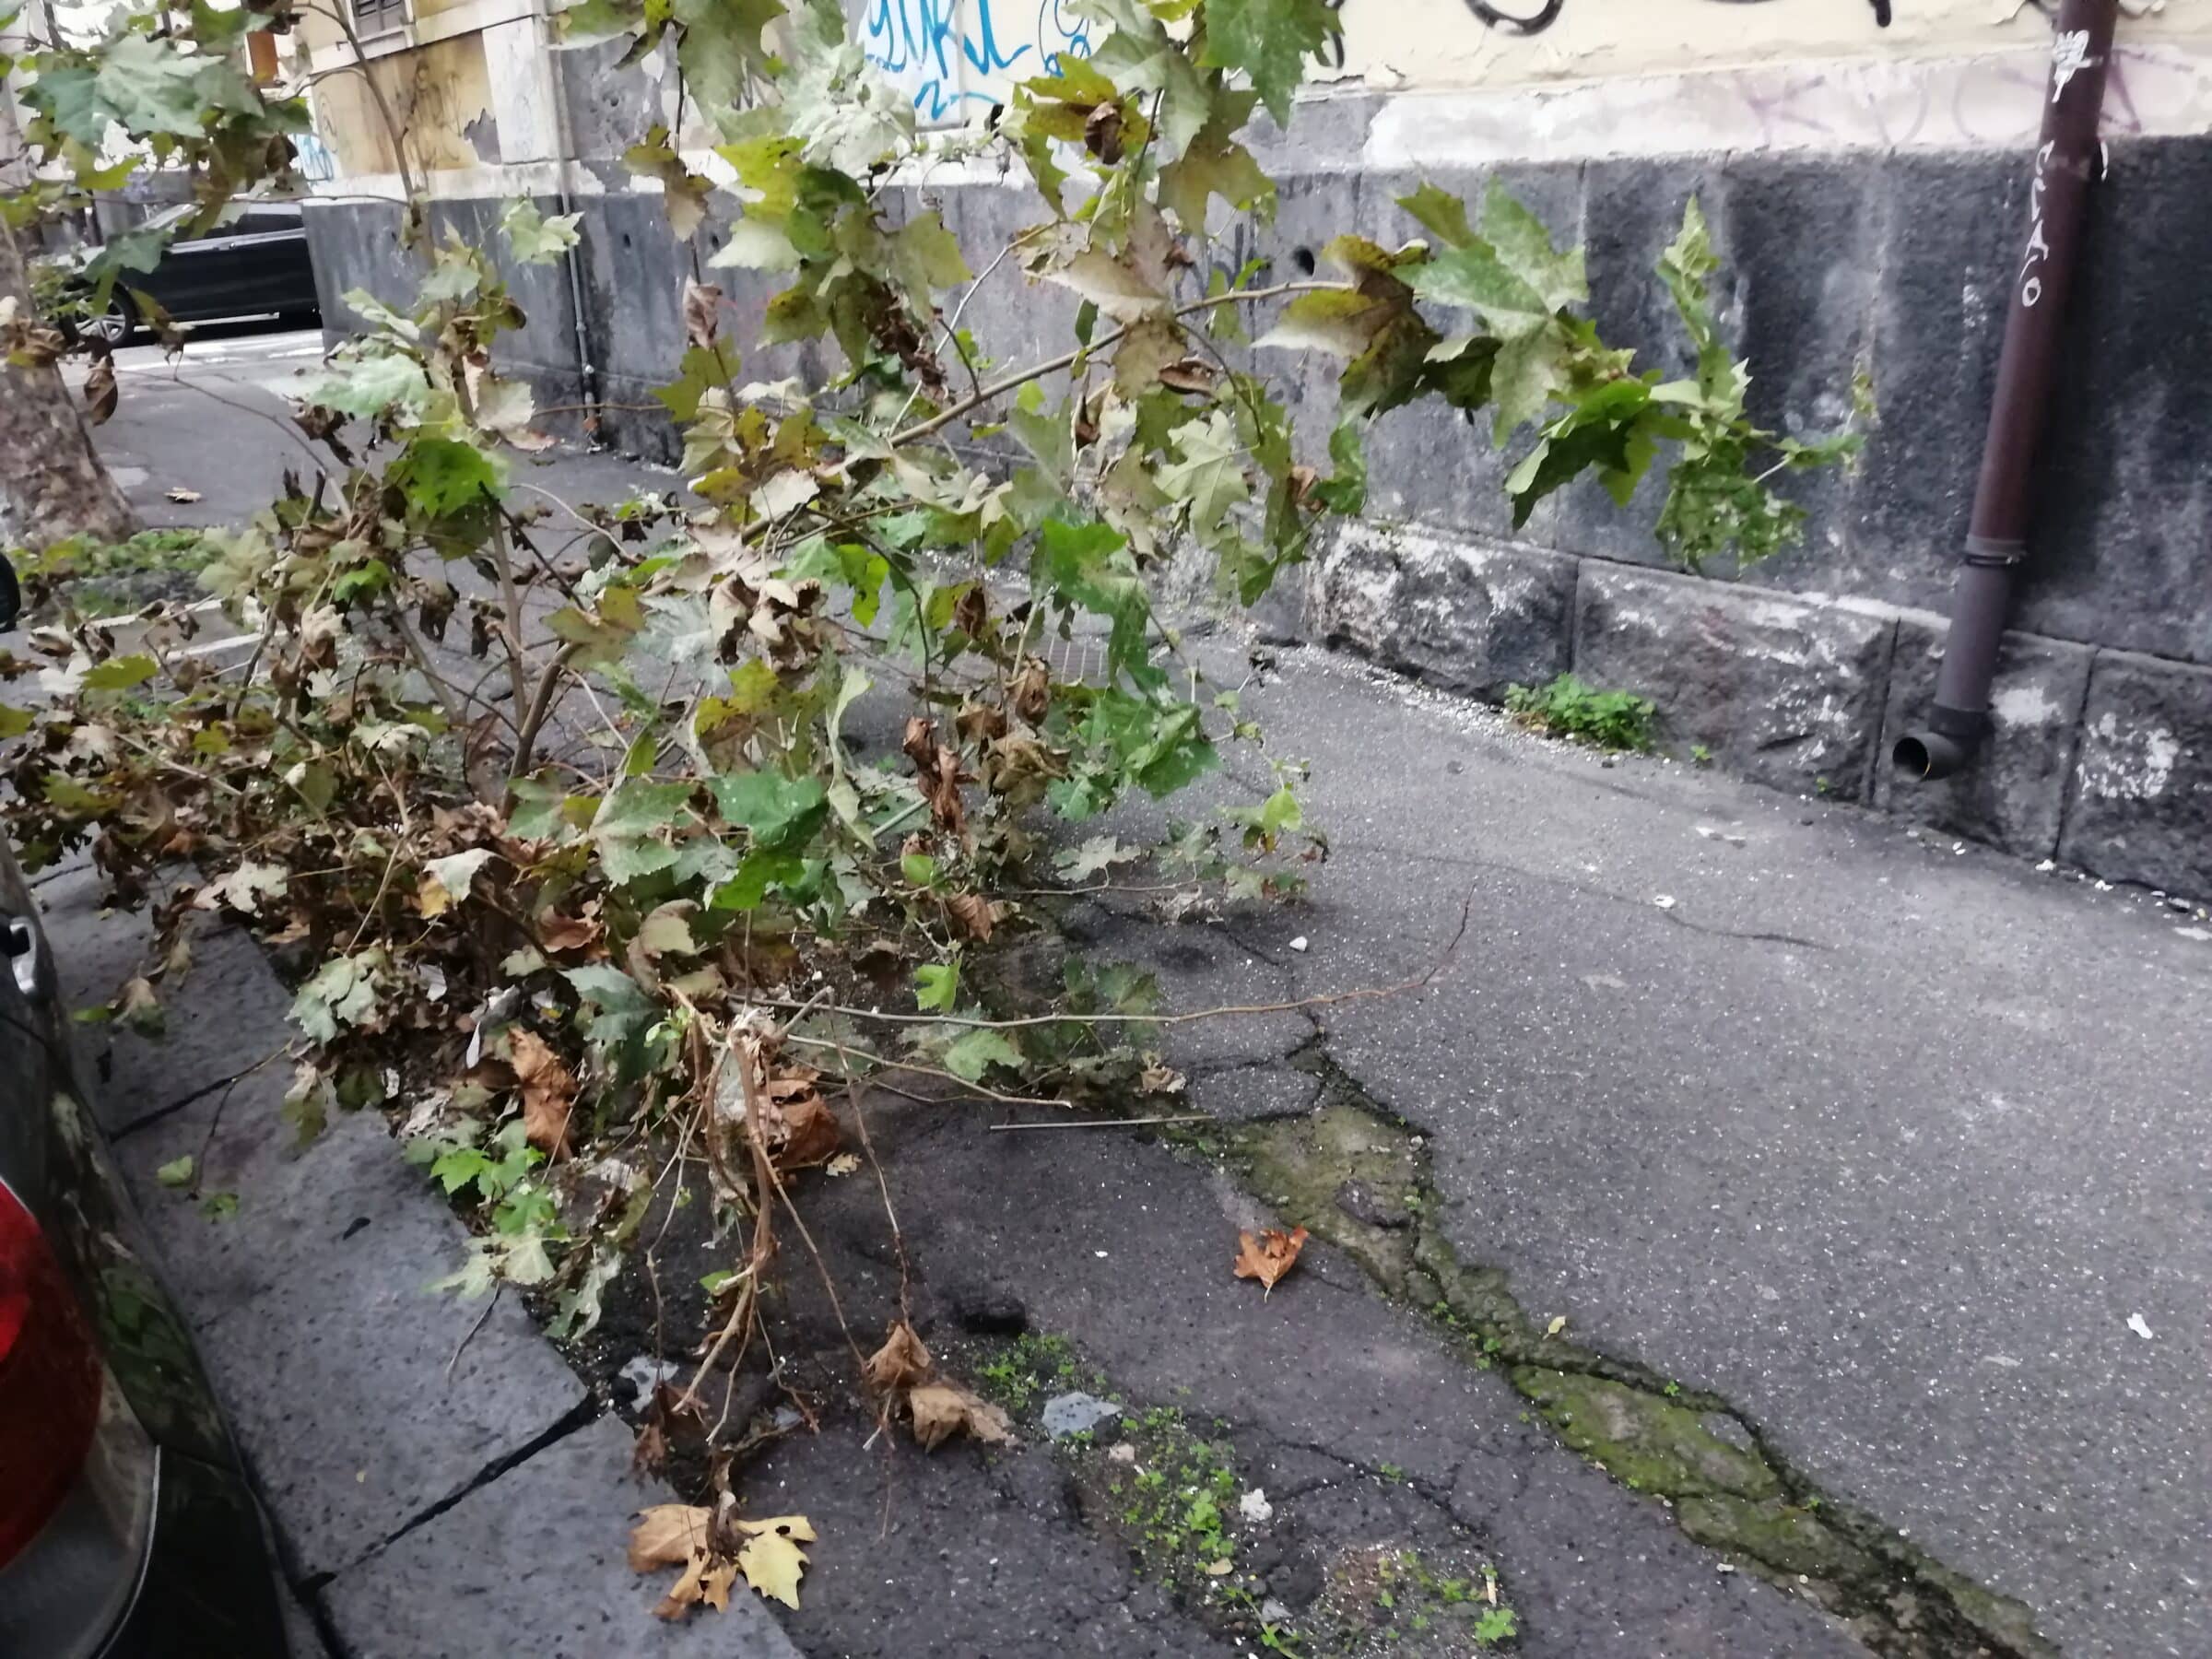 Sos marciapiedi di Catania, l’appello del Comitato Romolo Murri: “Pericolose trappole per i cittadini” – FOTO